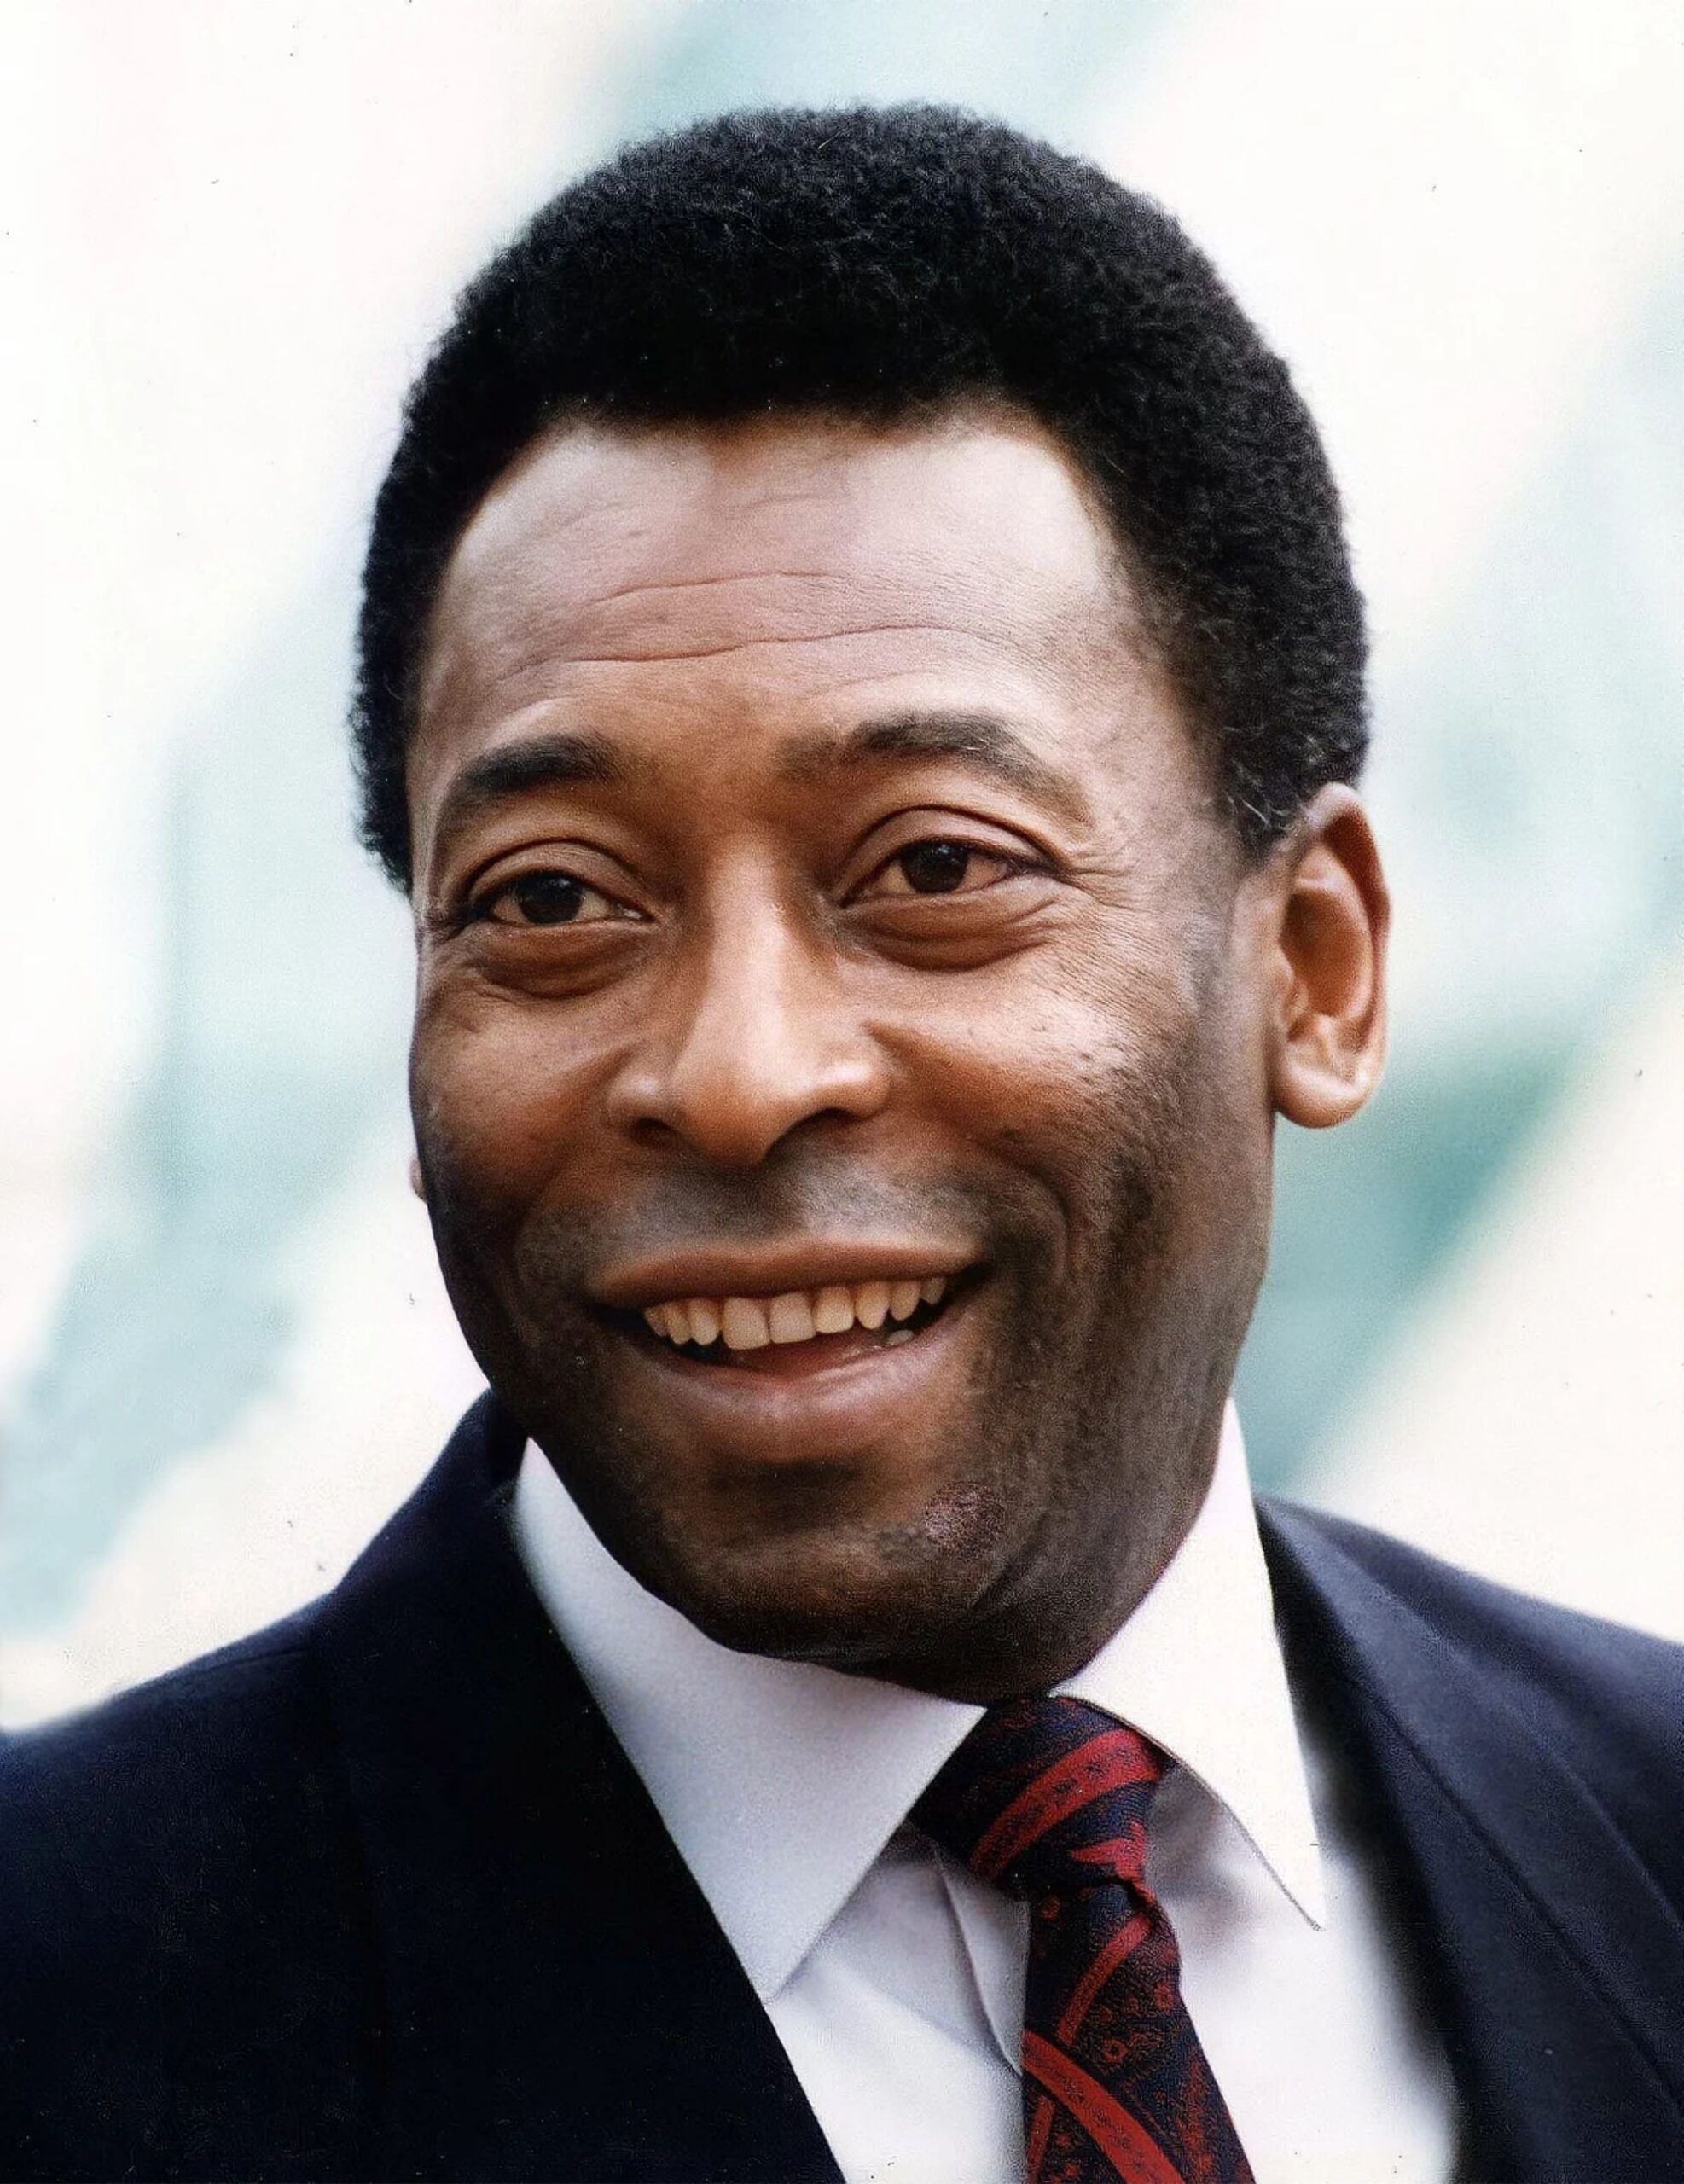 World mourns Pelé, Brazilian king of soccer